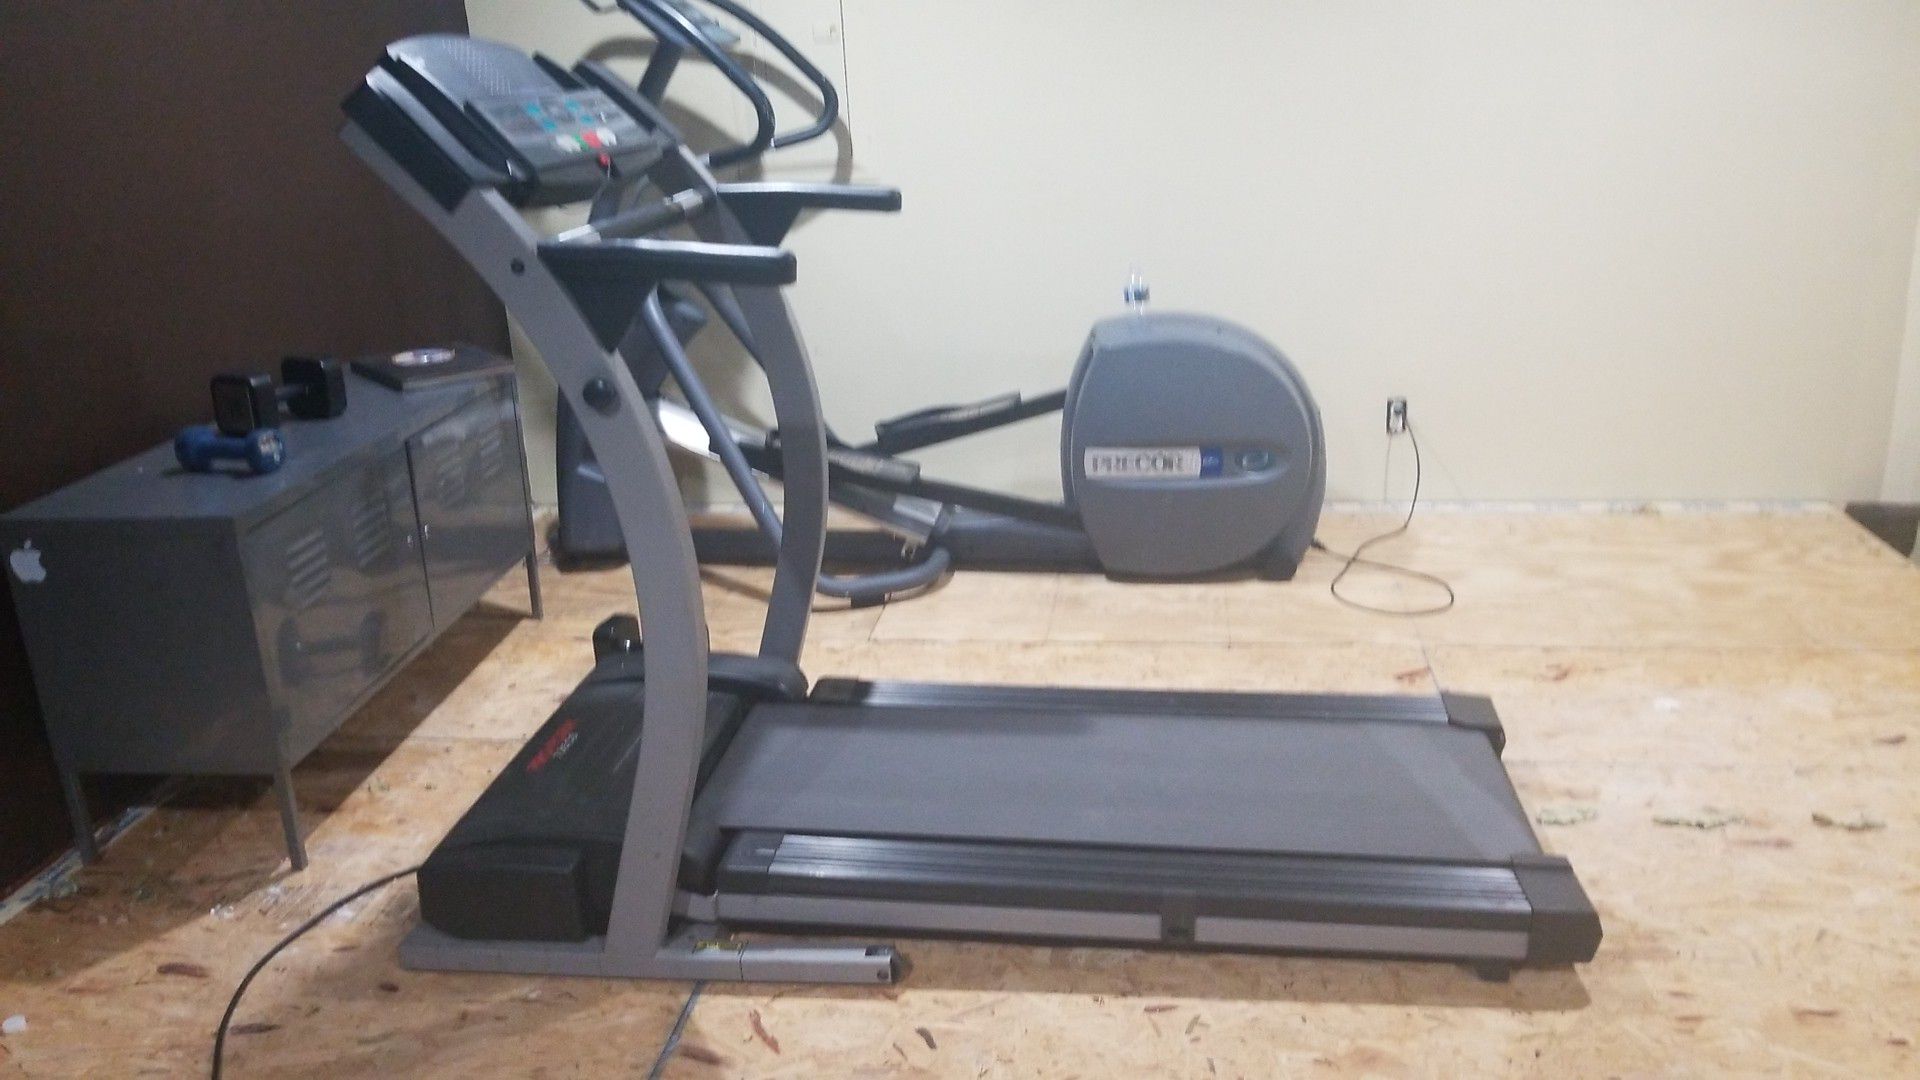 Preform 735cs Treadmill Ifit